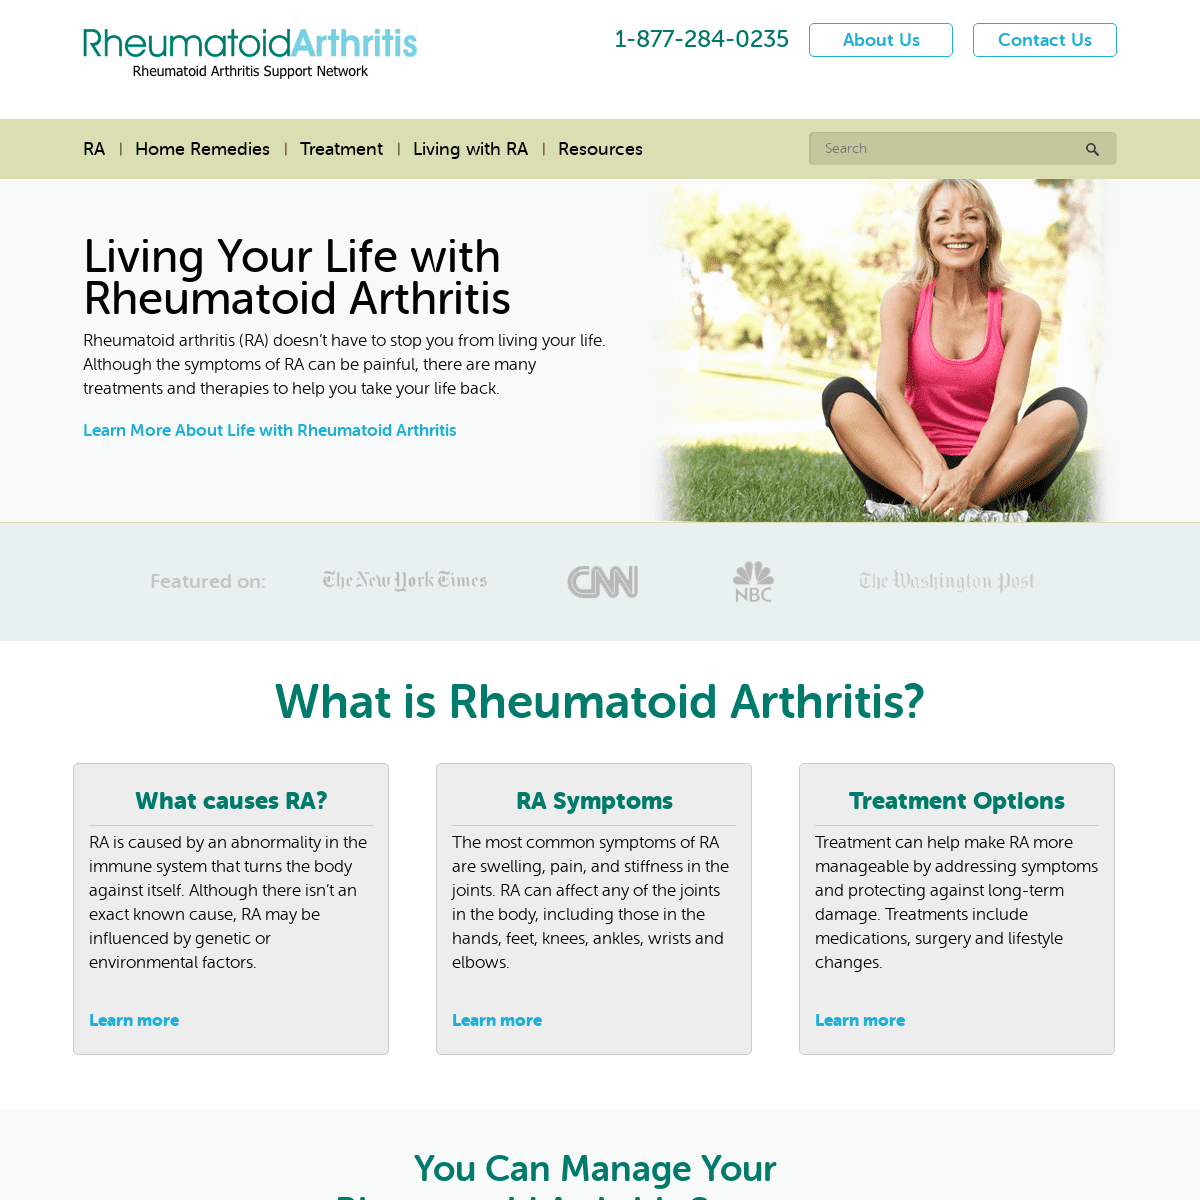 RheumatoidArthritis.org